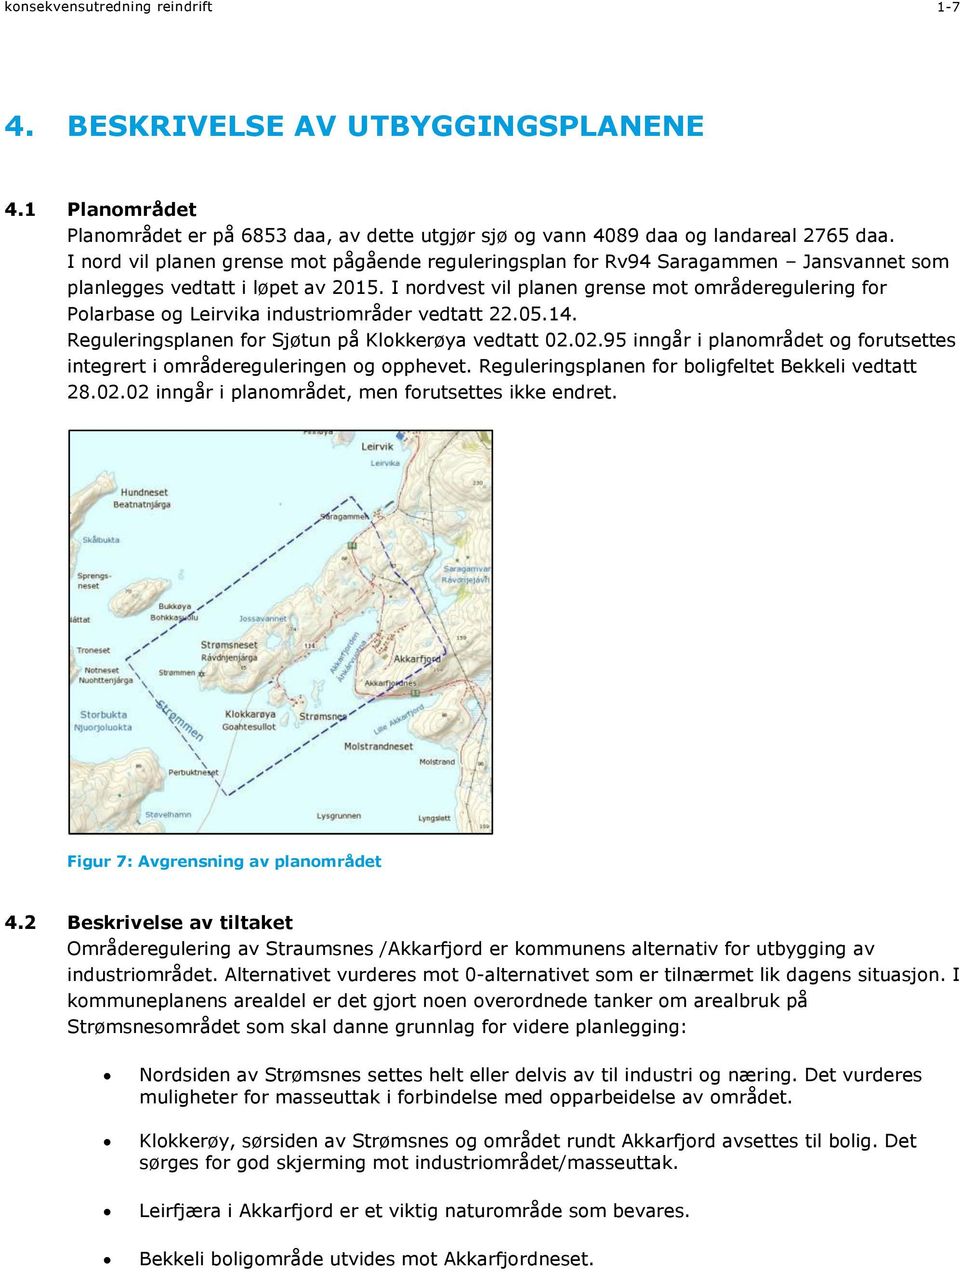 I nordvest vil planen grense mot områderegulering for Polarbase og Leirvika industriområder vedtatt 22.05.14. Reguleringsplanen for Sjøtun på Klokkerøya vedtatt 02.